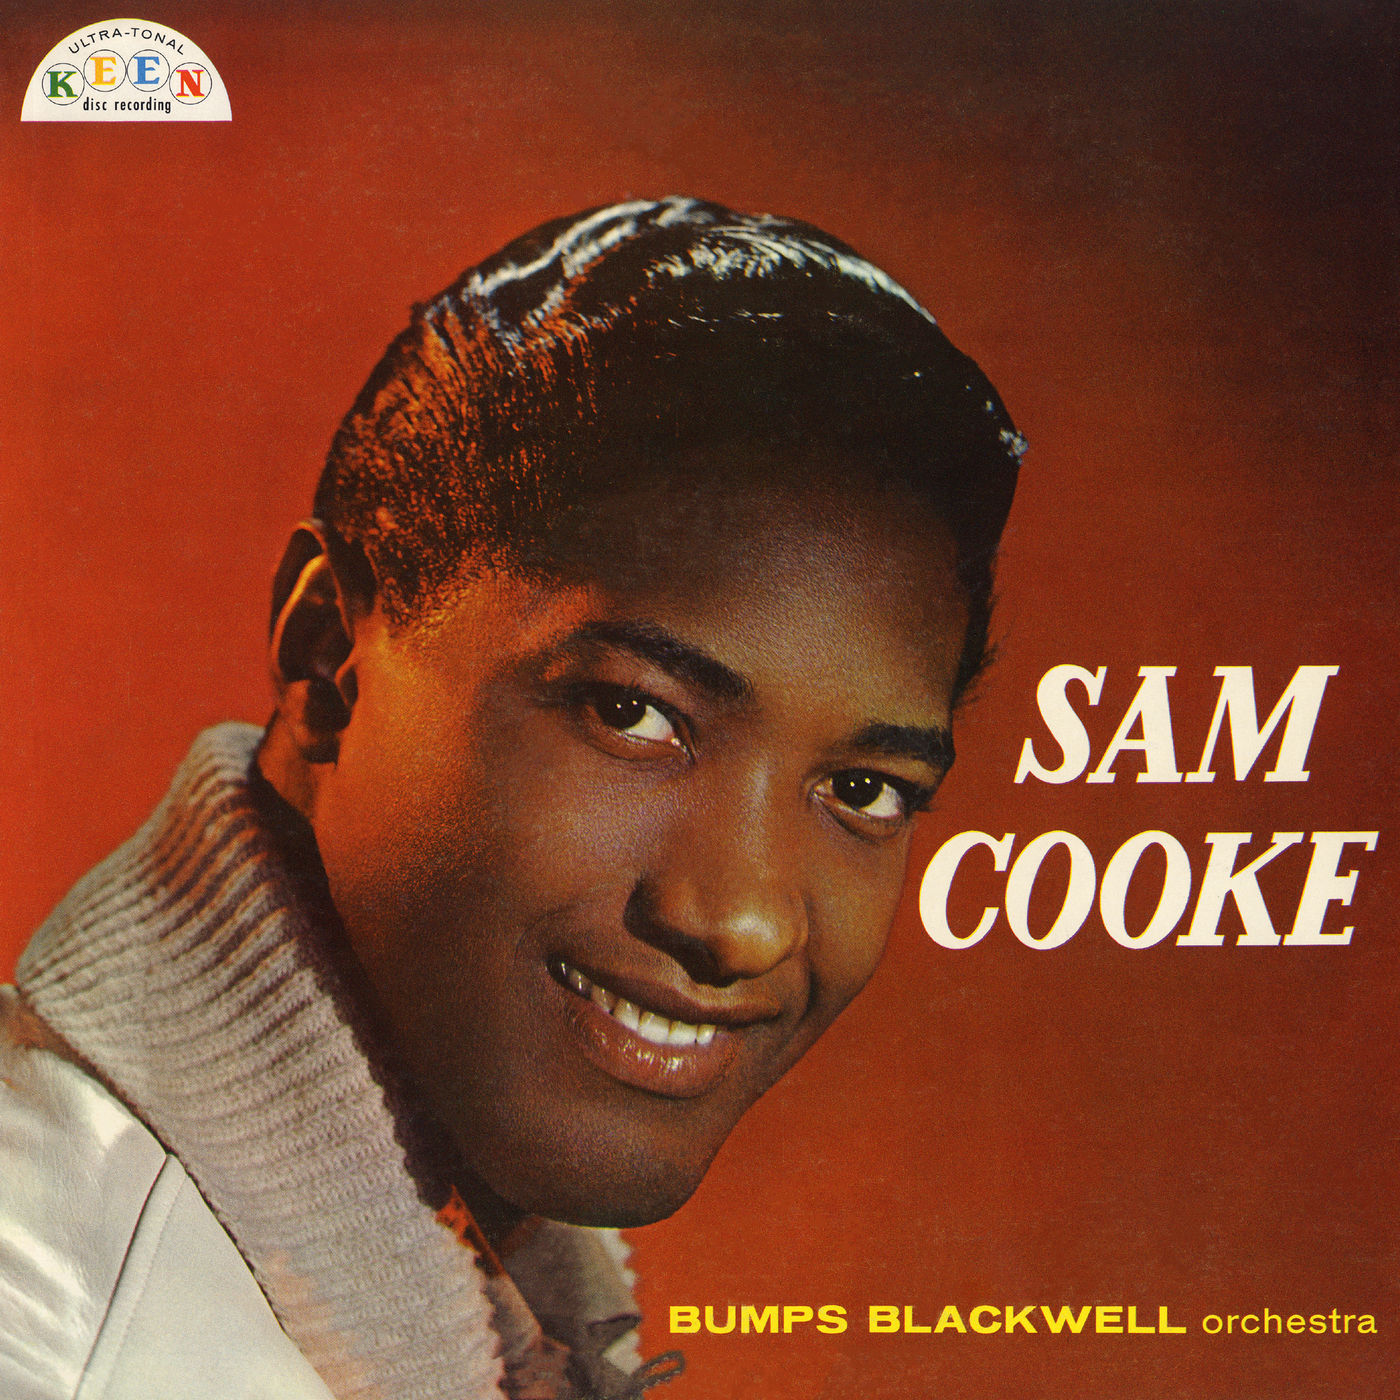 Sam Cooke - Sam Cooke (1958/2020) [Official Digital Download 24bit/96kHz]